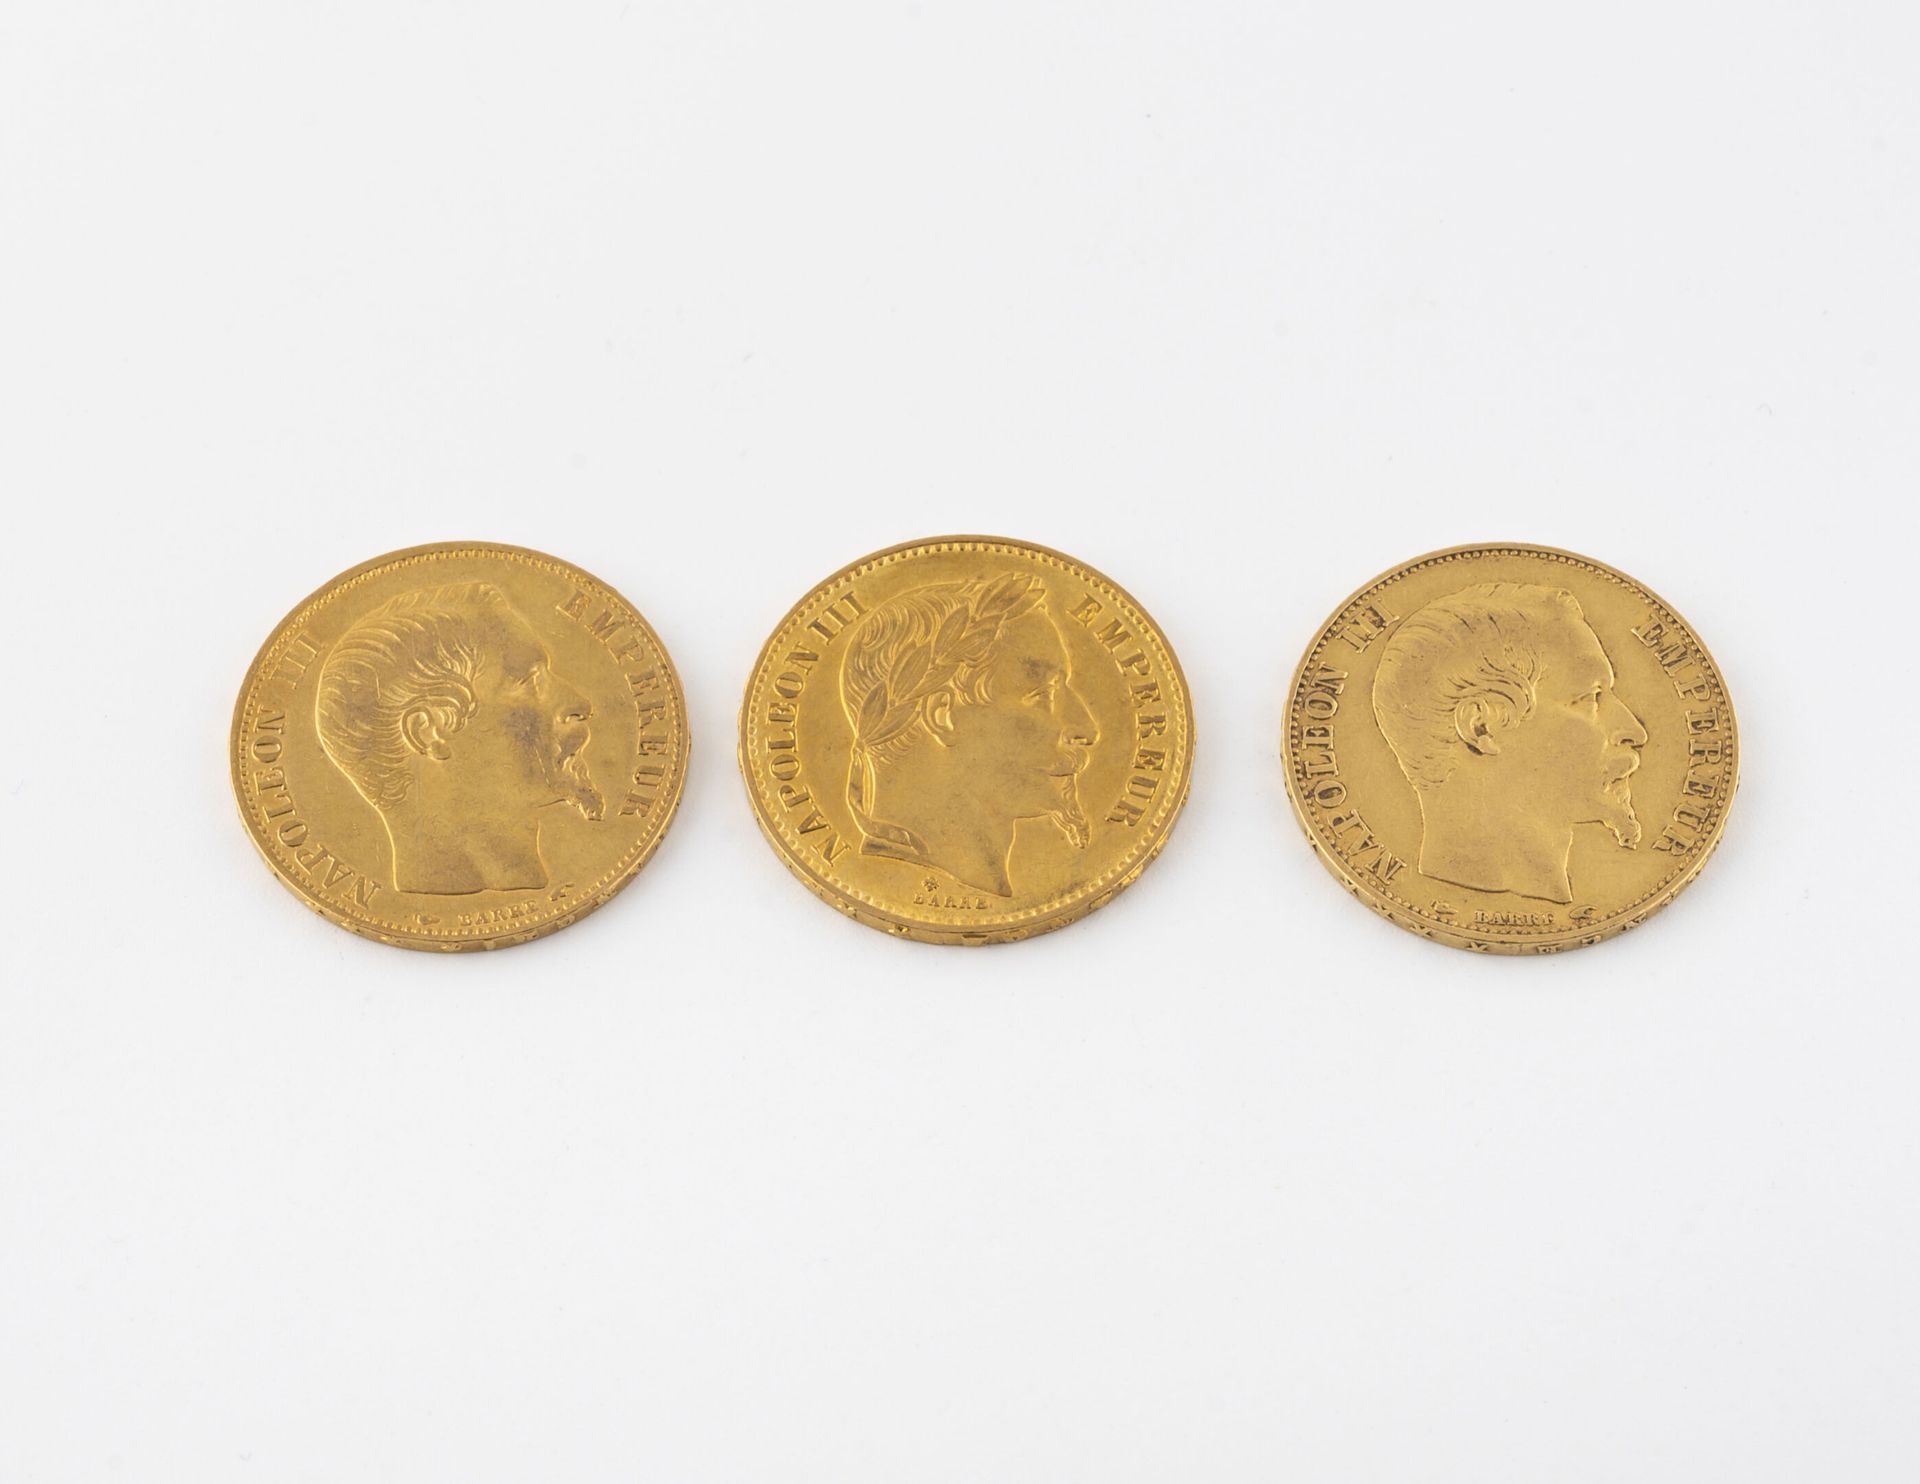 FRANCE 3枚20法郎金币。
两枚1854年的硬币和一枚1869年的硬币。拿破仑三世。 
总重量：19,2克。